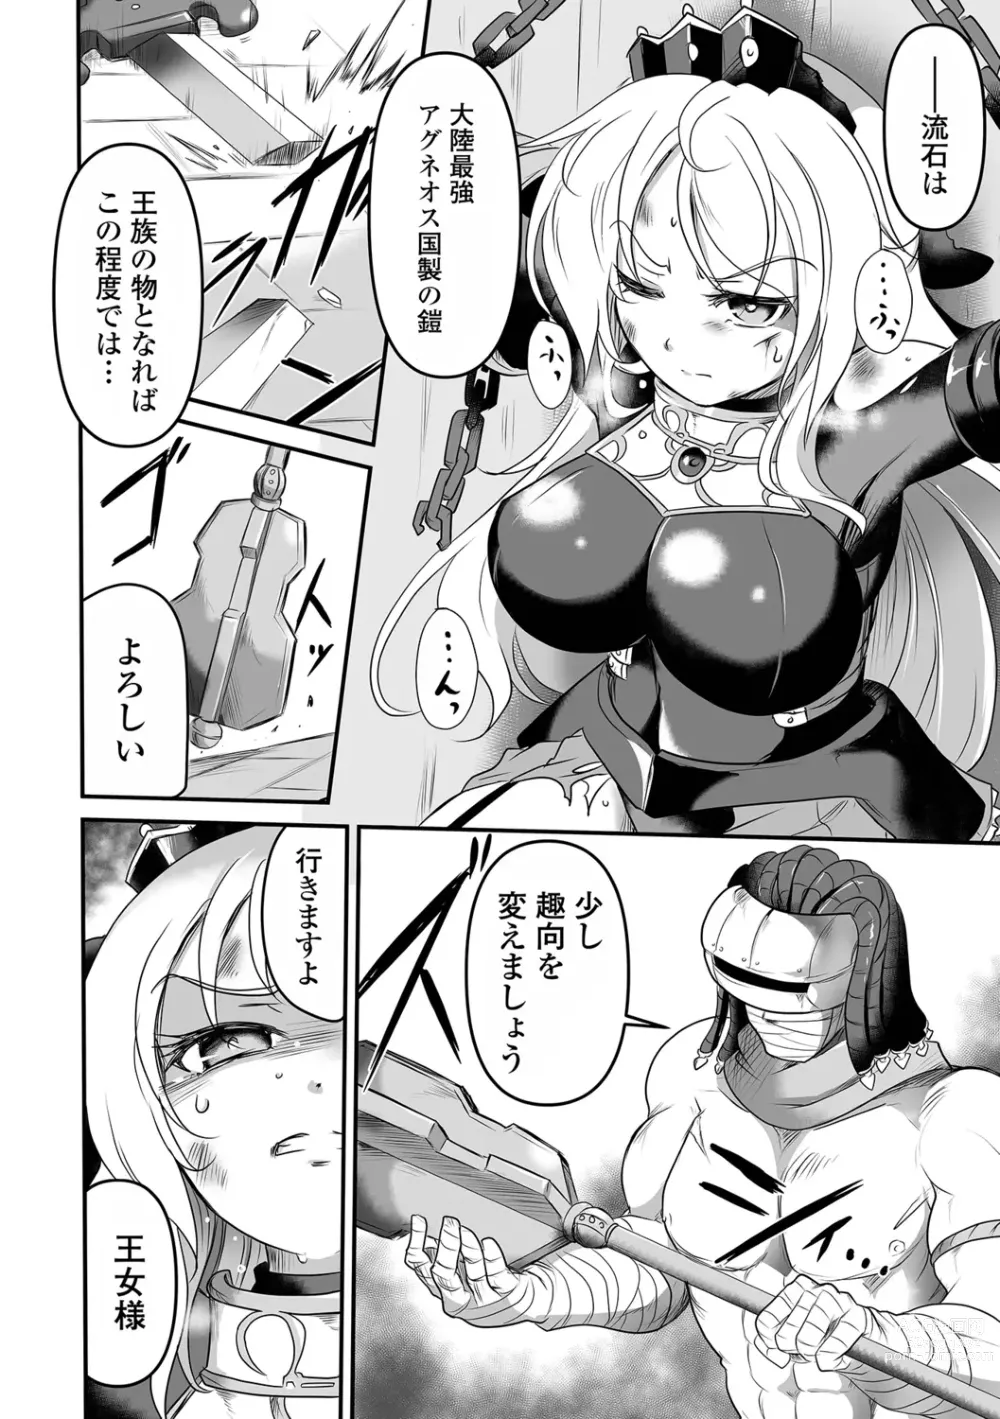 Page 6 of manga Yoroi no Oujo